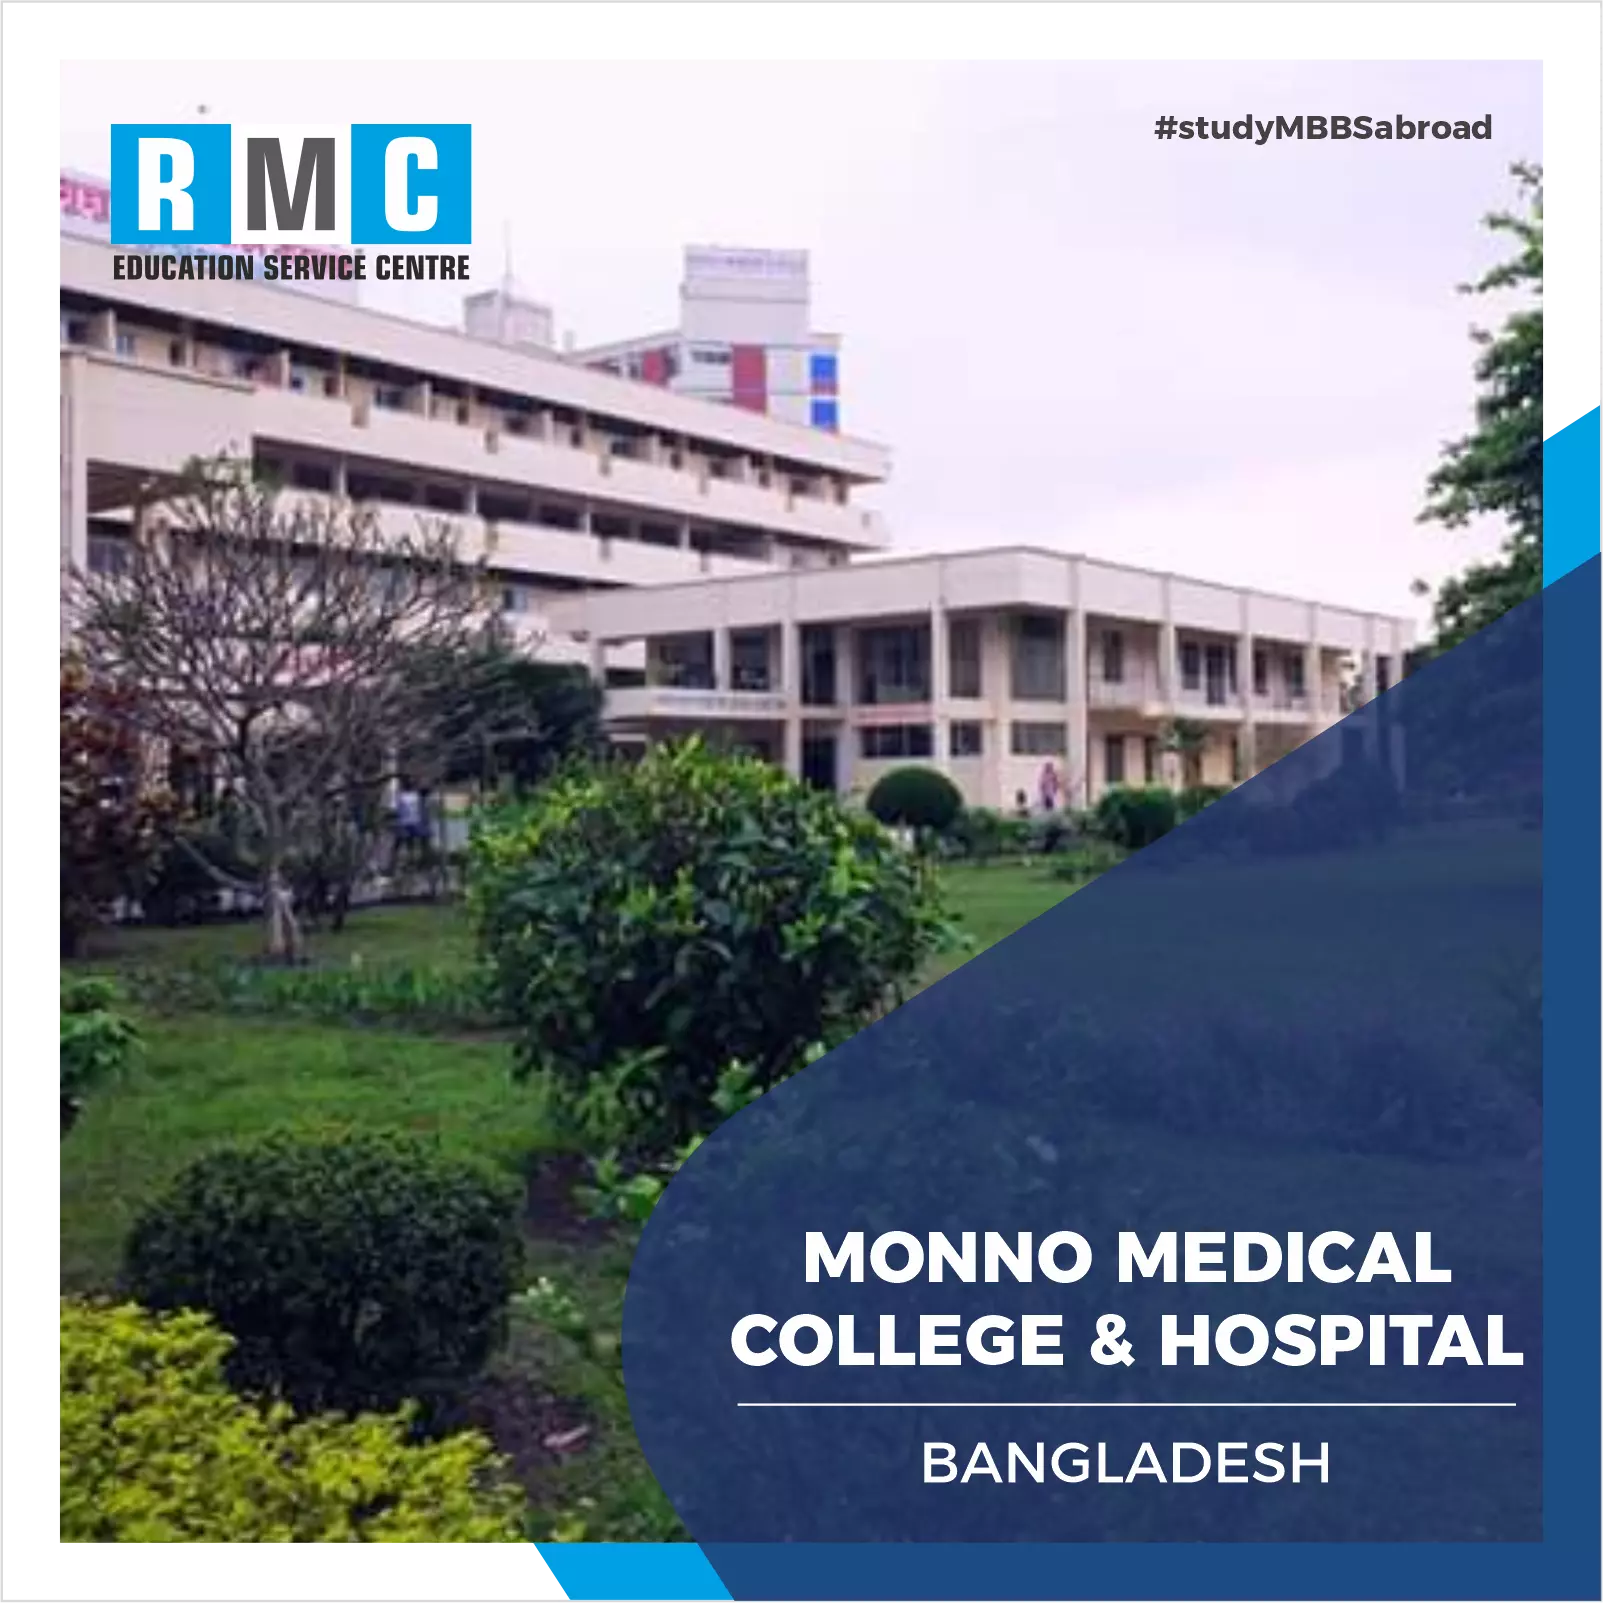 Monno Medical College & Hospital